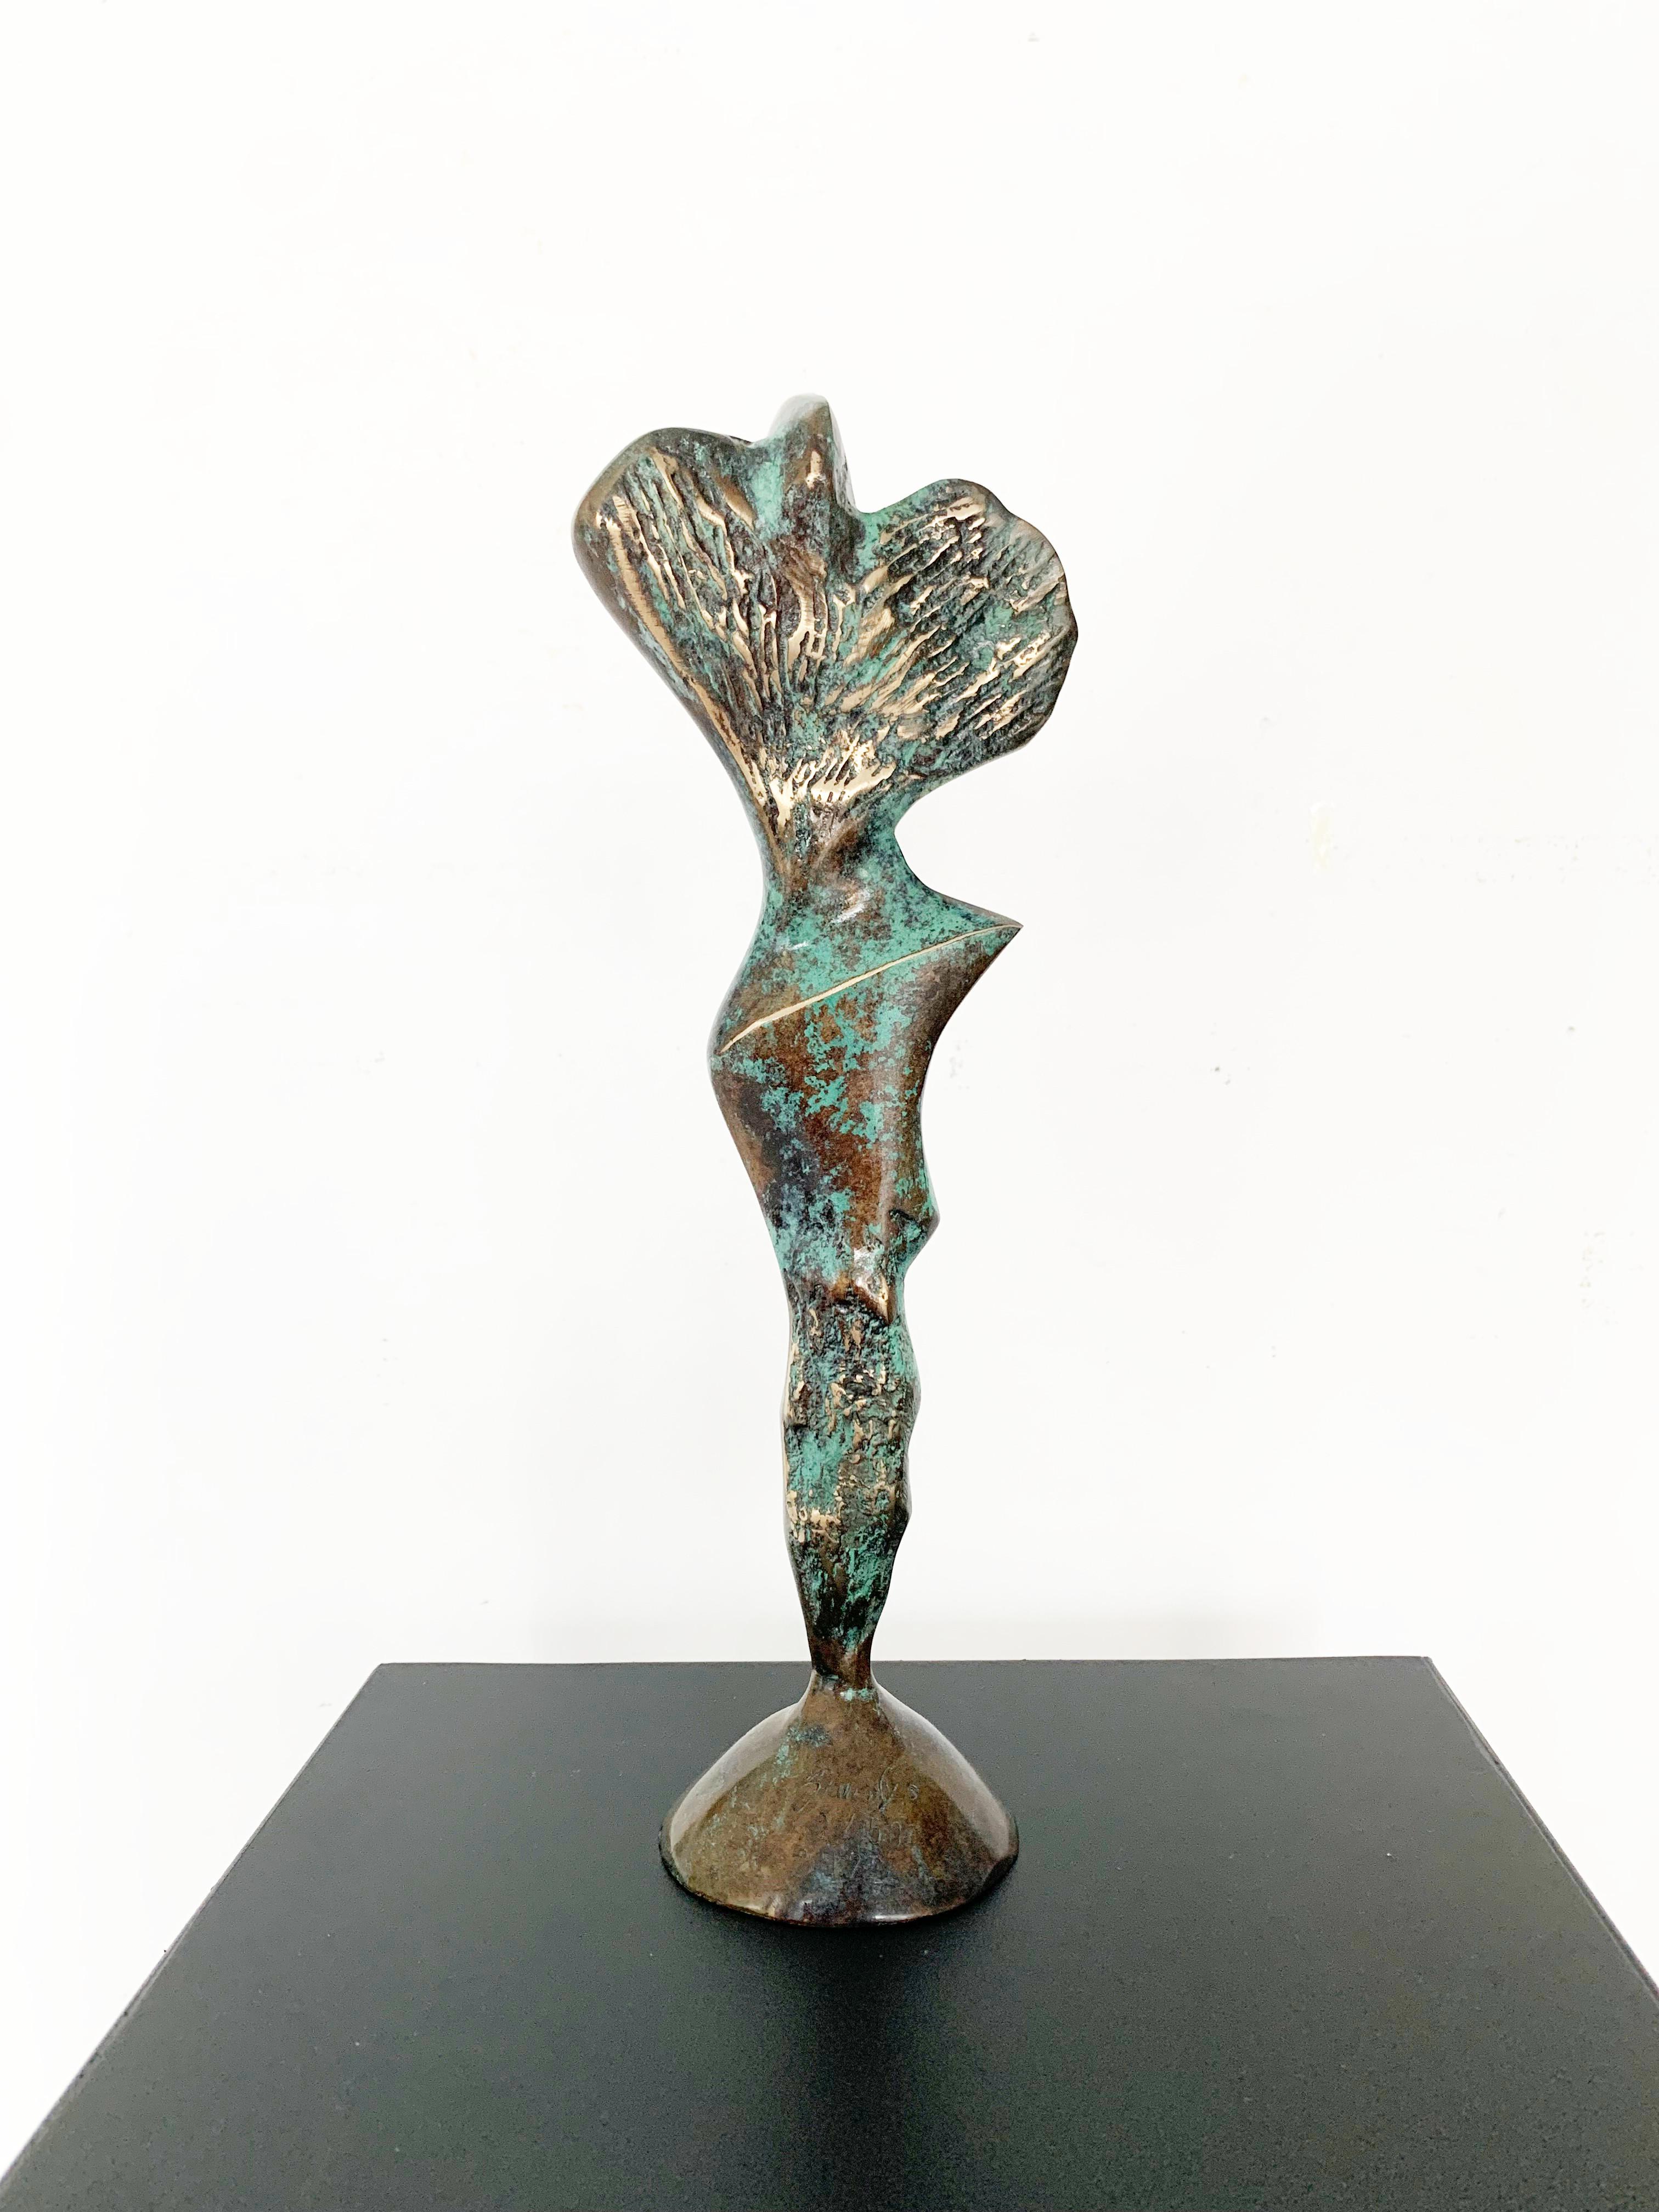 Sculpture contemporaine en bronze sur socle en marbre de l'artiste polonais Stan Wysocki. L'œuvre d'art provient d'une édition limitée à 50 exemplaires. La sculpture représente une figure féminine filtrée par un style géométrique et synthétisant.